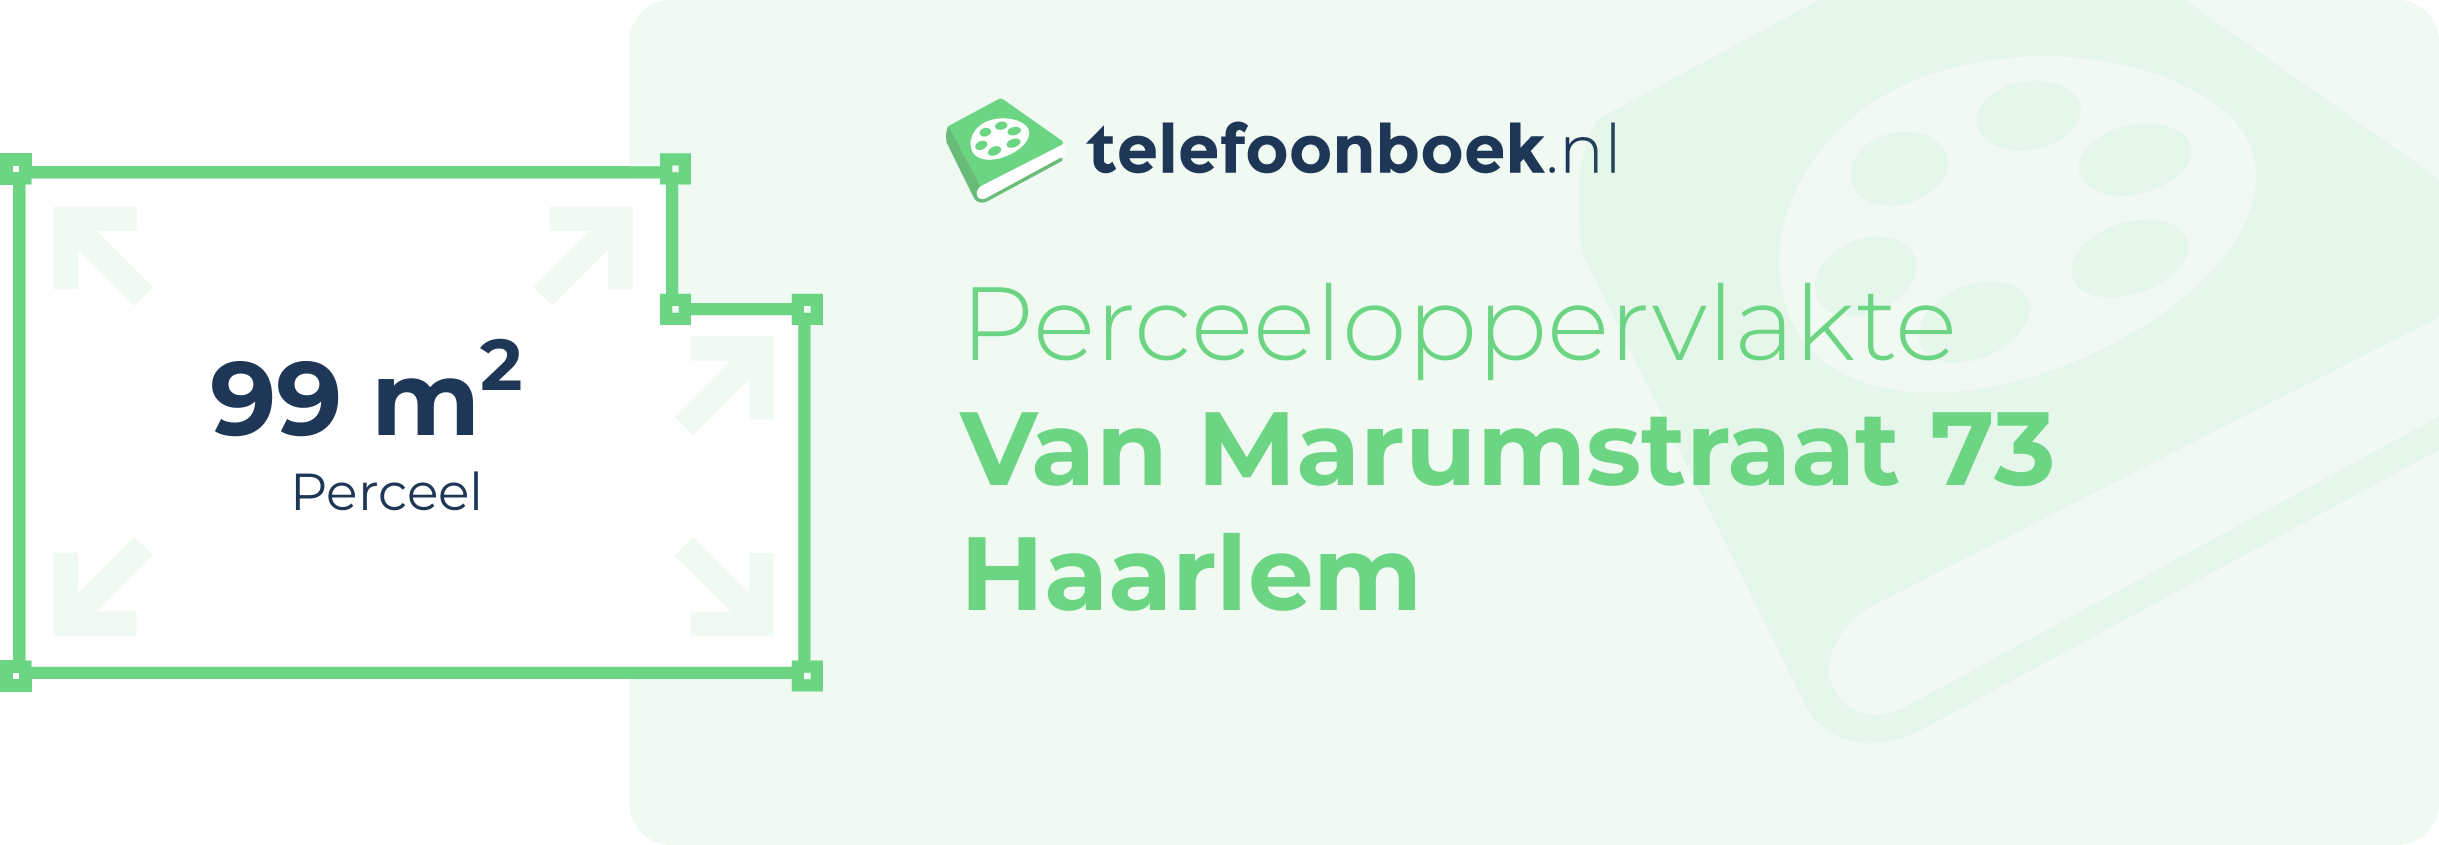 Perceeloppervlakte Van Marumstraat 73 Haarlem